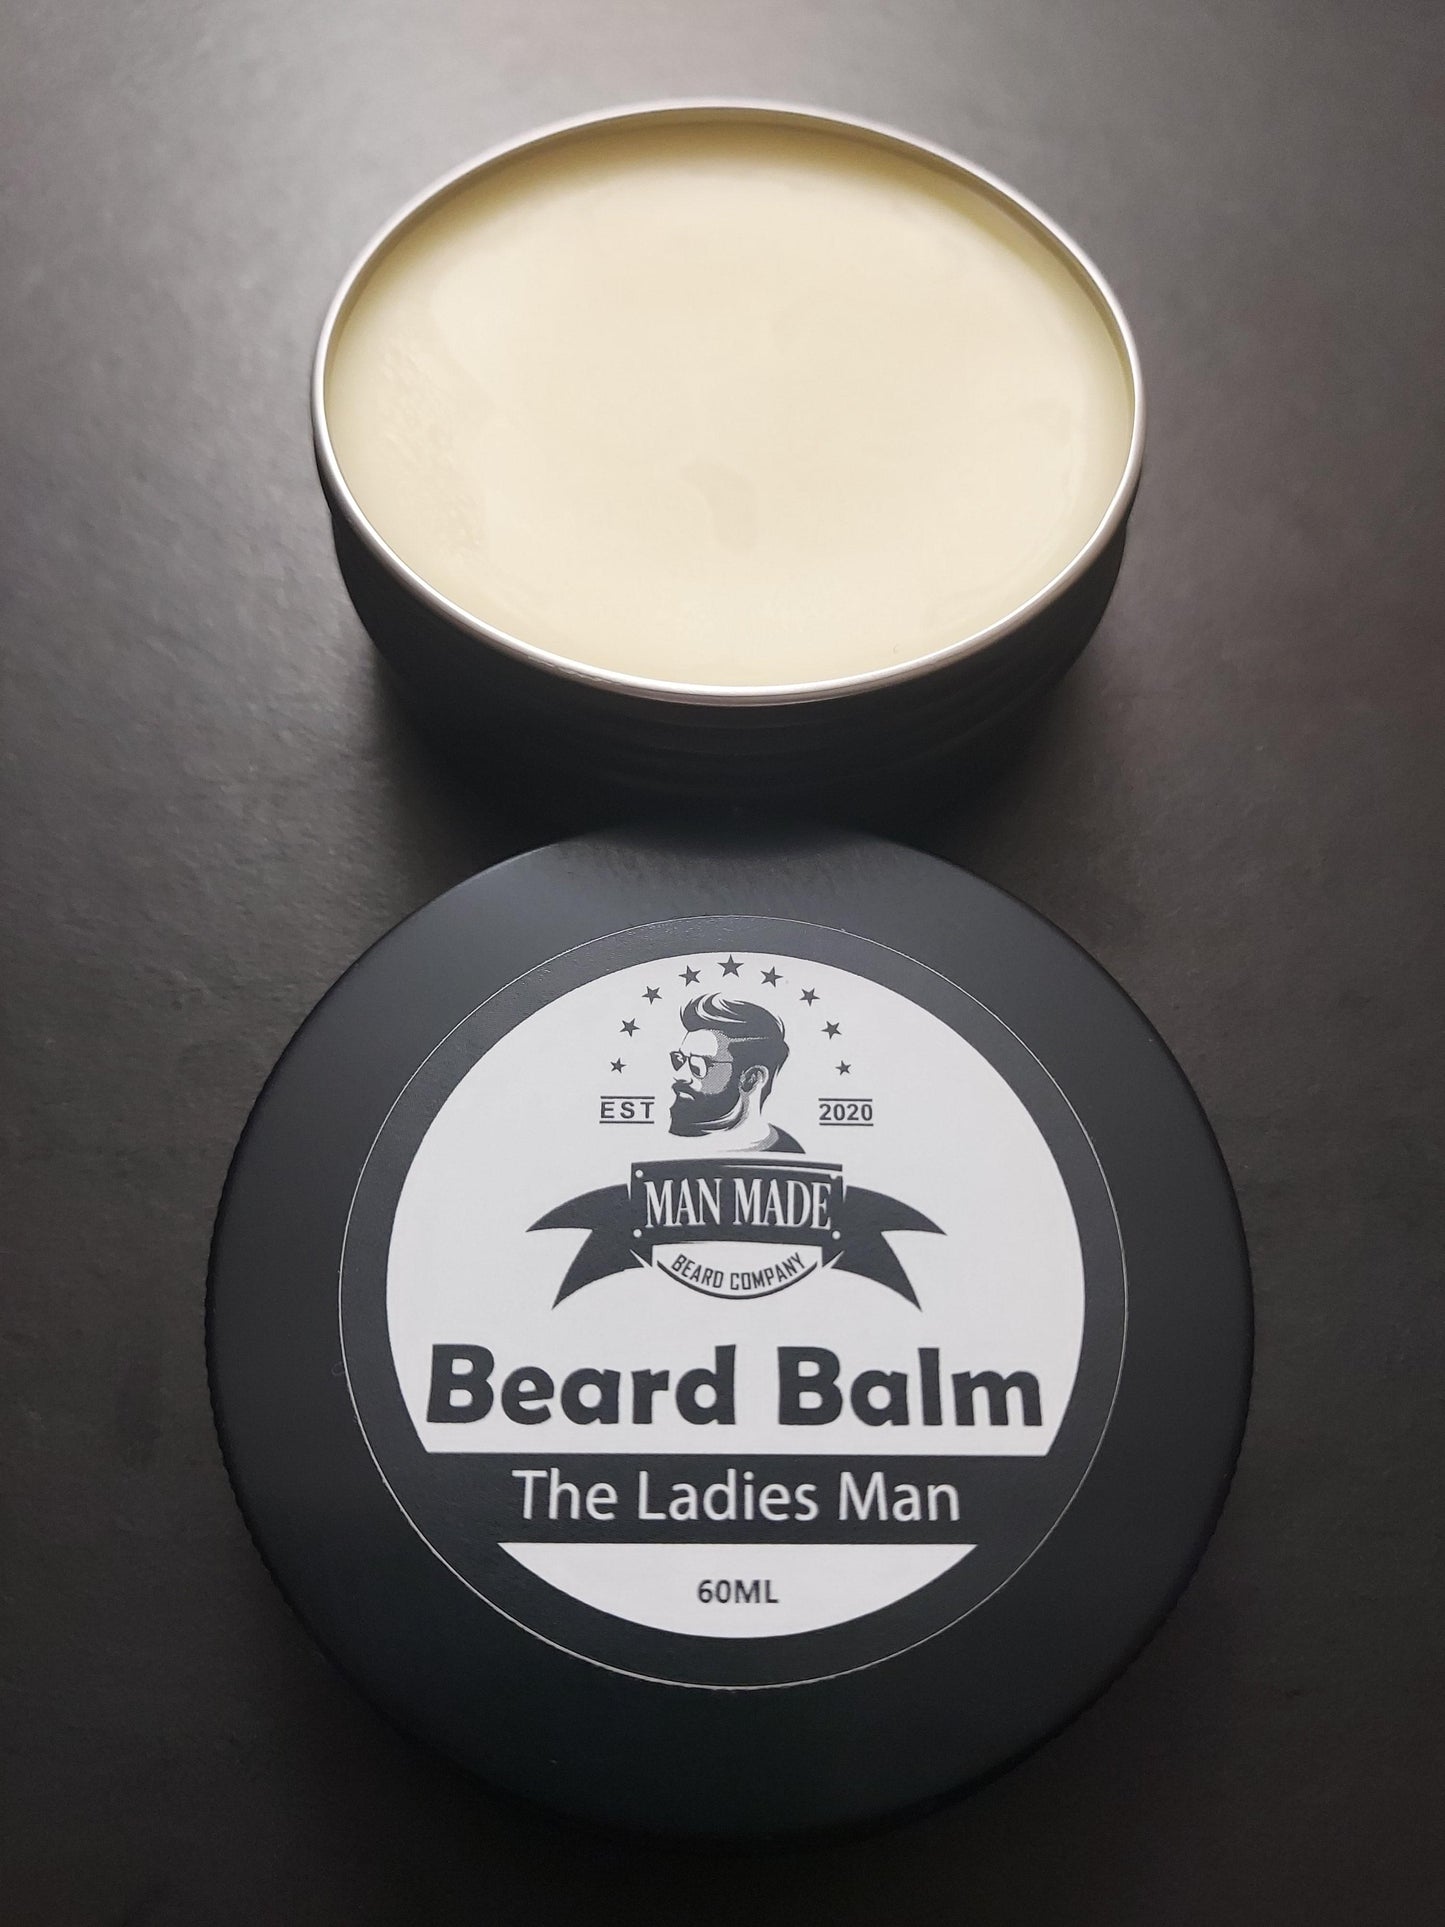 UK Made Best Beard Balm